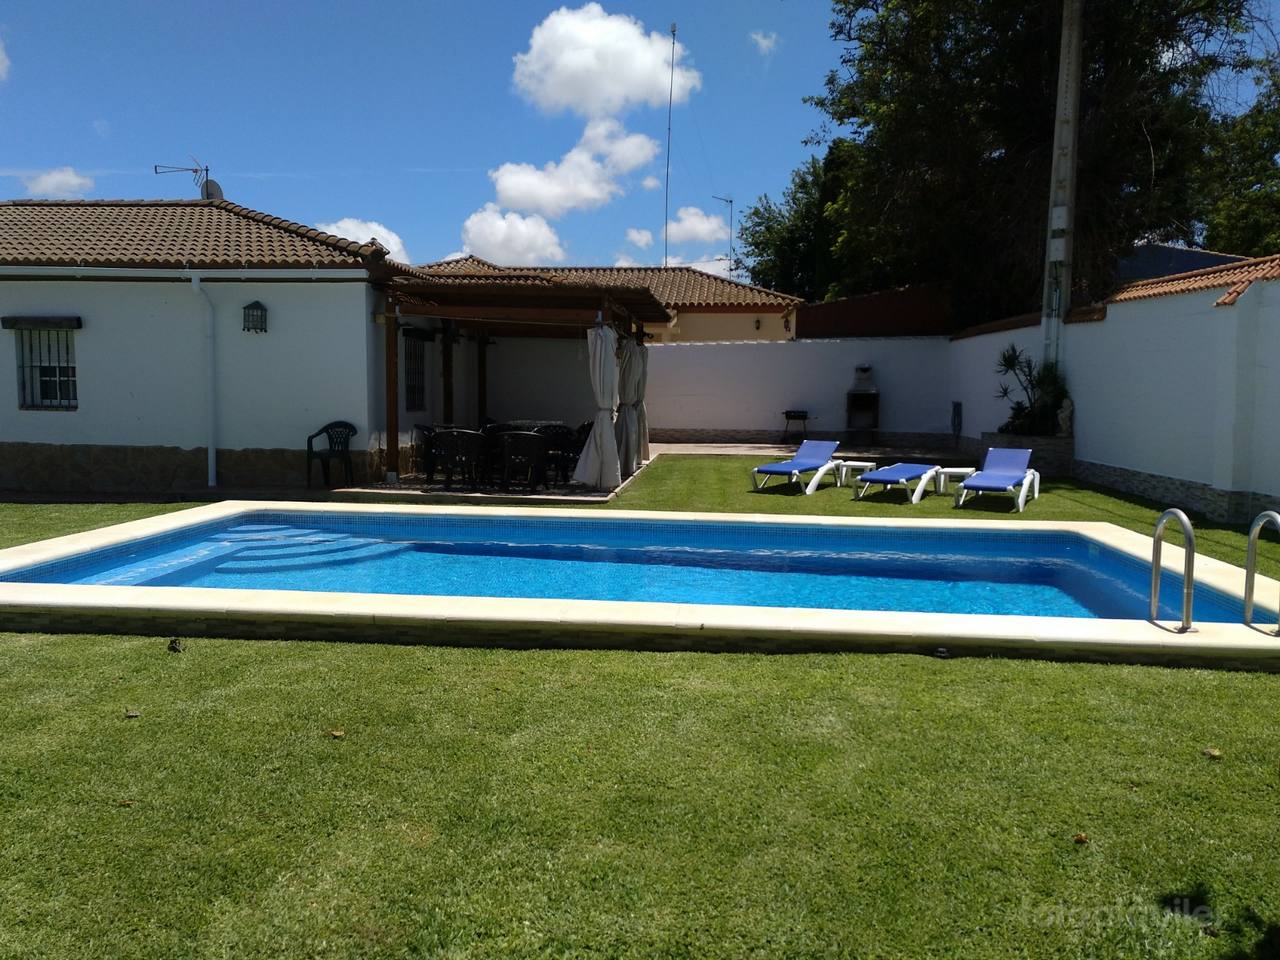 Alquiler chalet 3 dormitorios con piscina privada en Chiclana de la Frontera